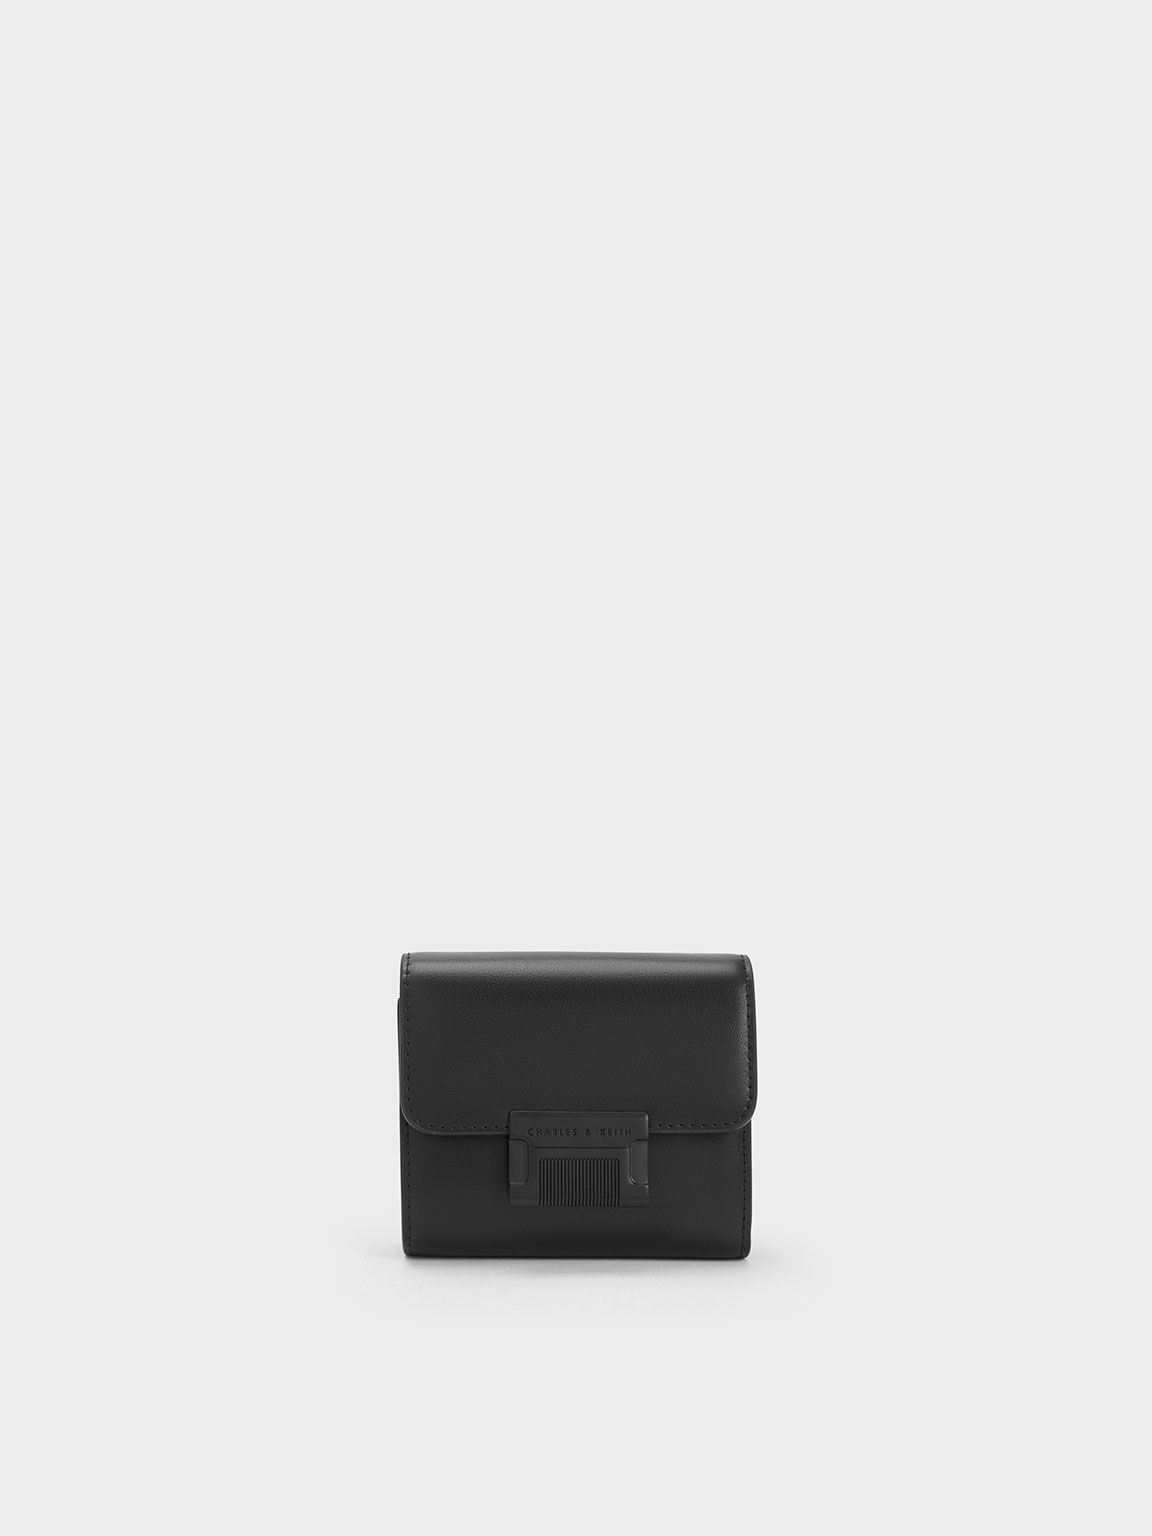 Freida 金屬釦摺疊短夾, 黑色, hi-res